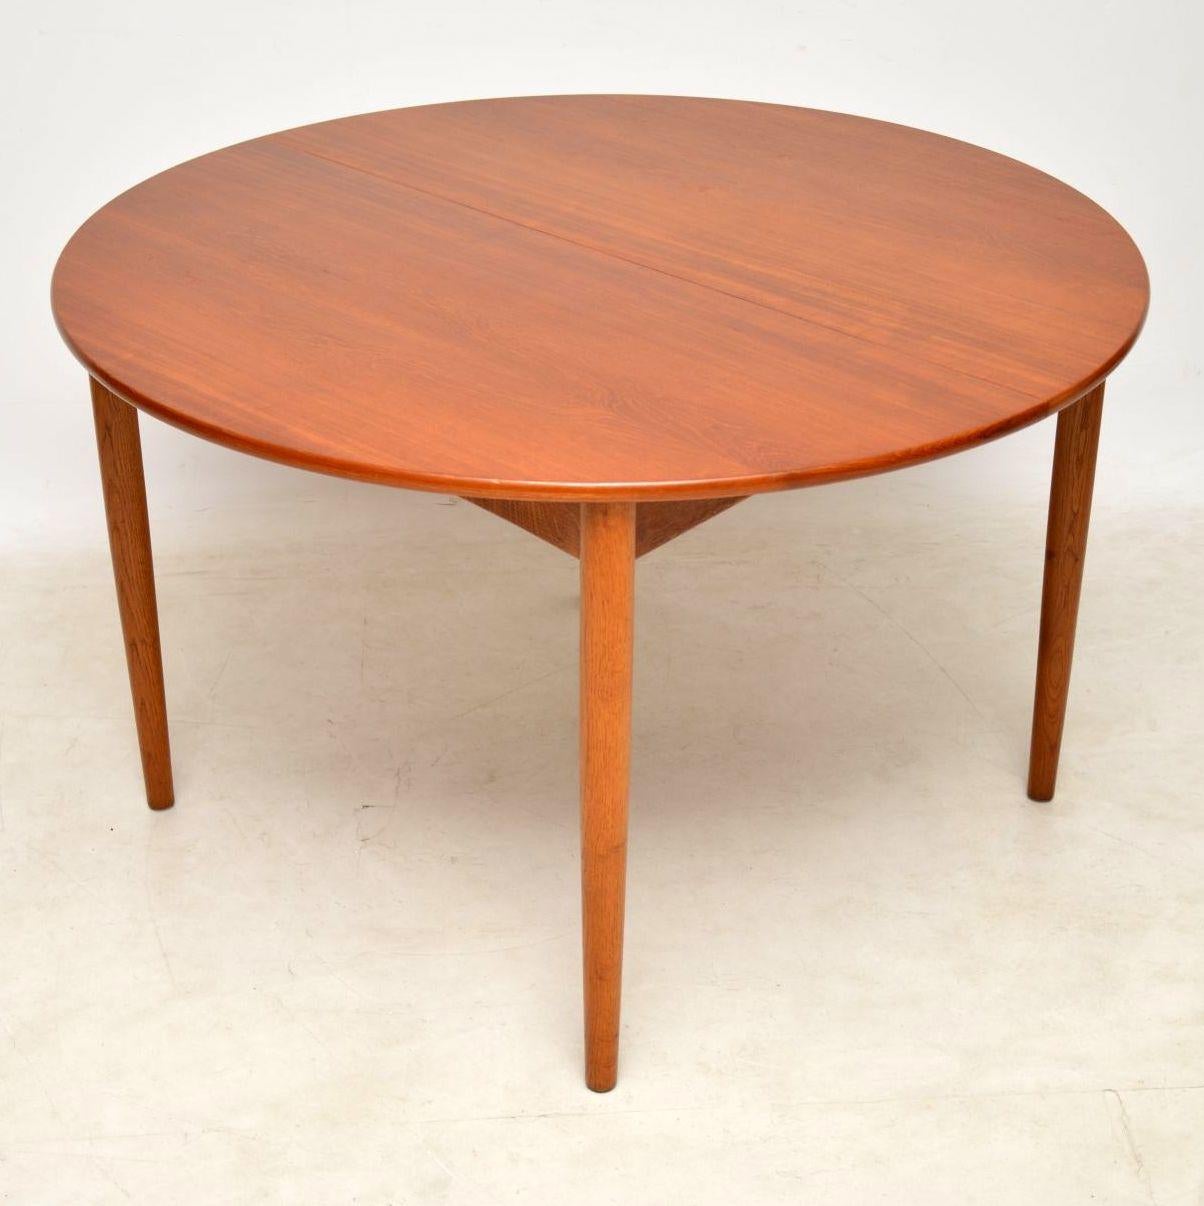 Mid-Century Modern 1950s Danish Teak & Oak Dining Table & Chairs by Hans Wegner for Fritz Hansen